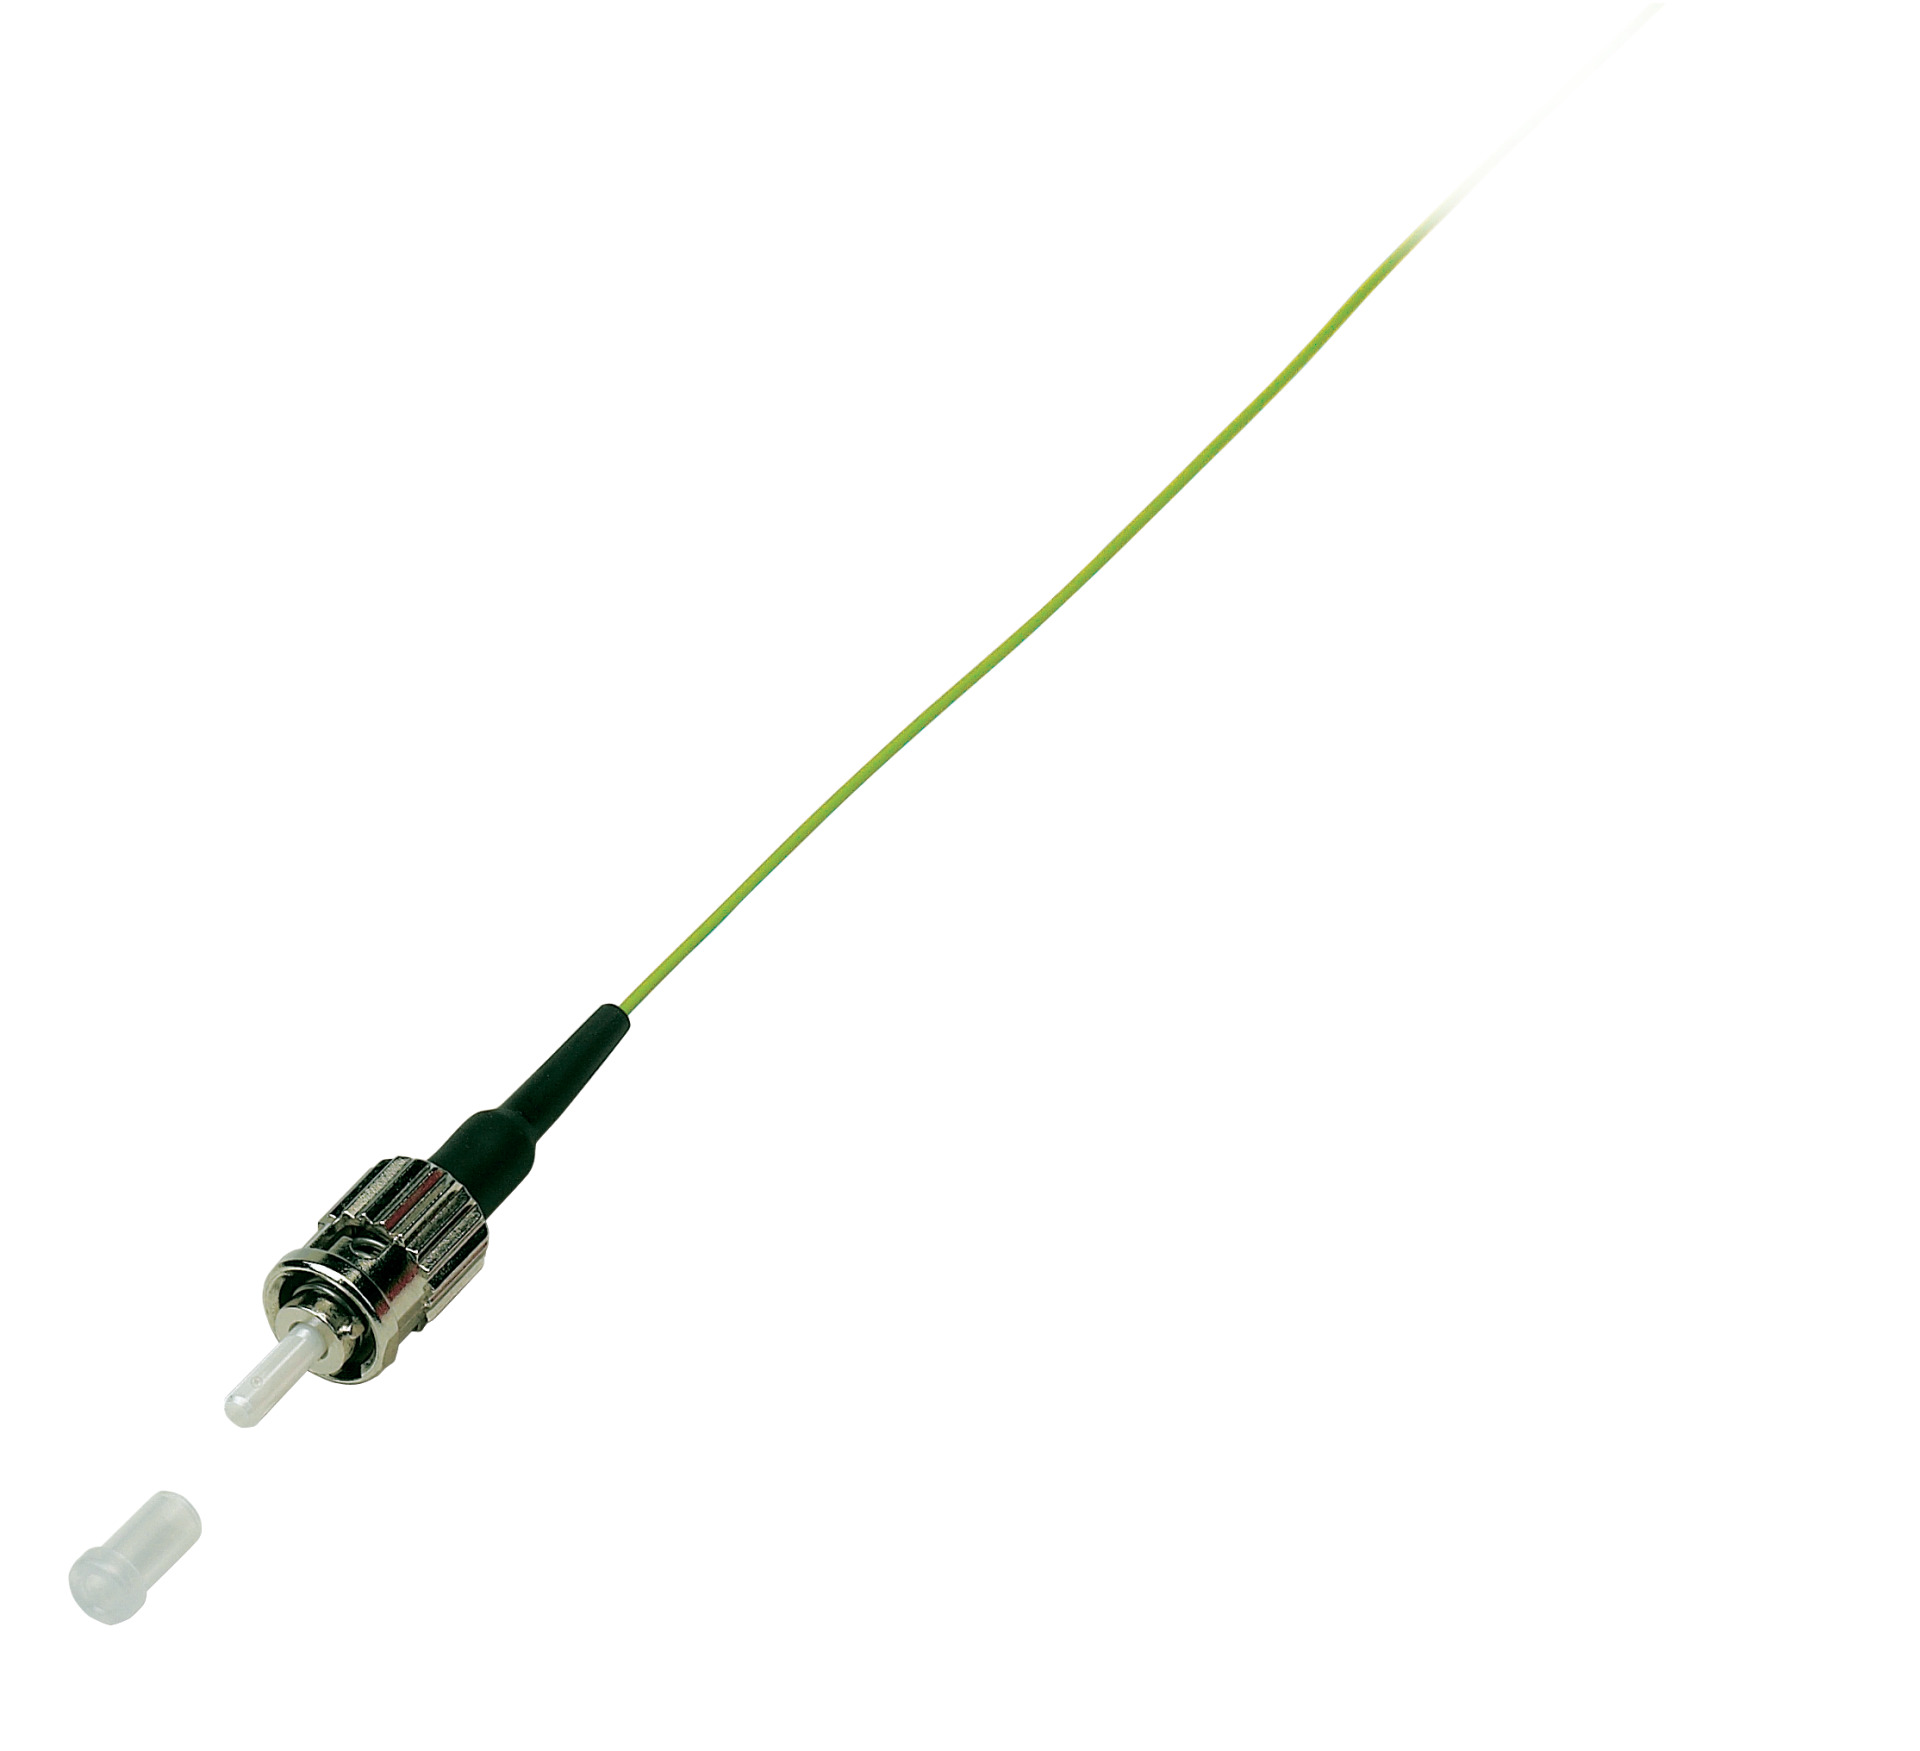 Faserpigtail ST 50/125µ OM2 grün, 2m